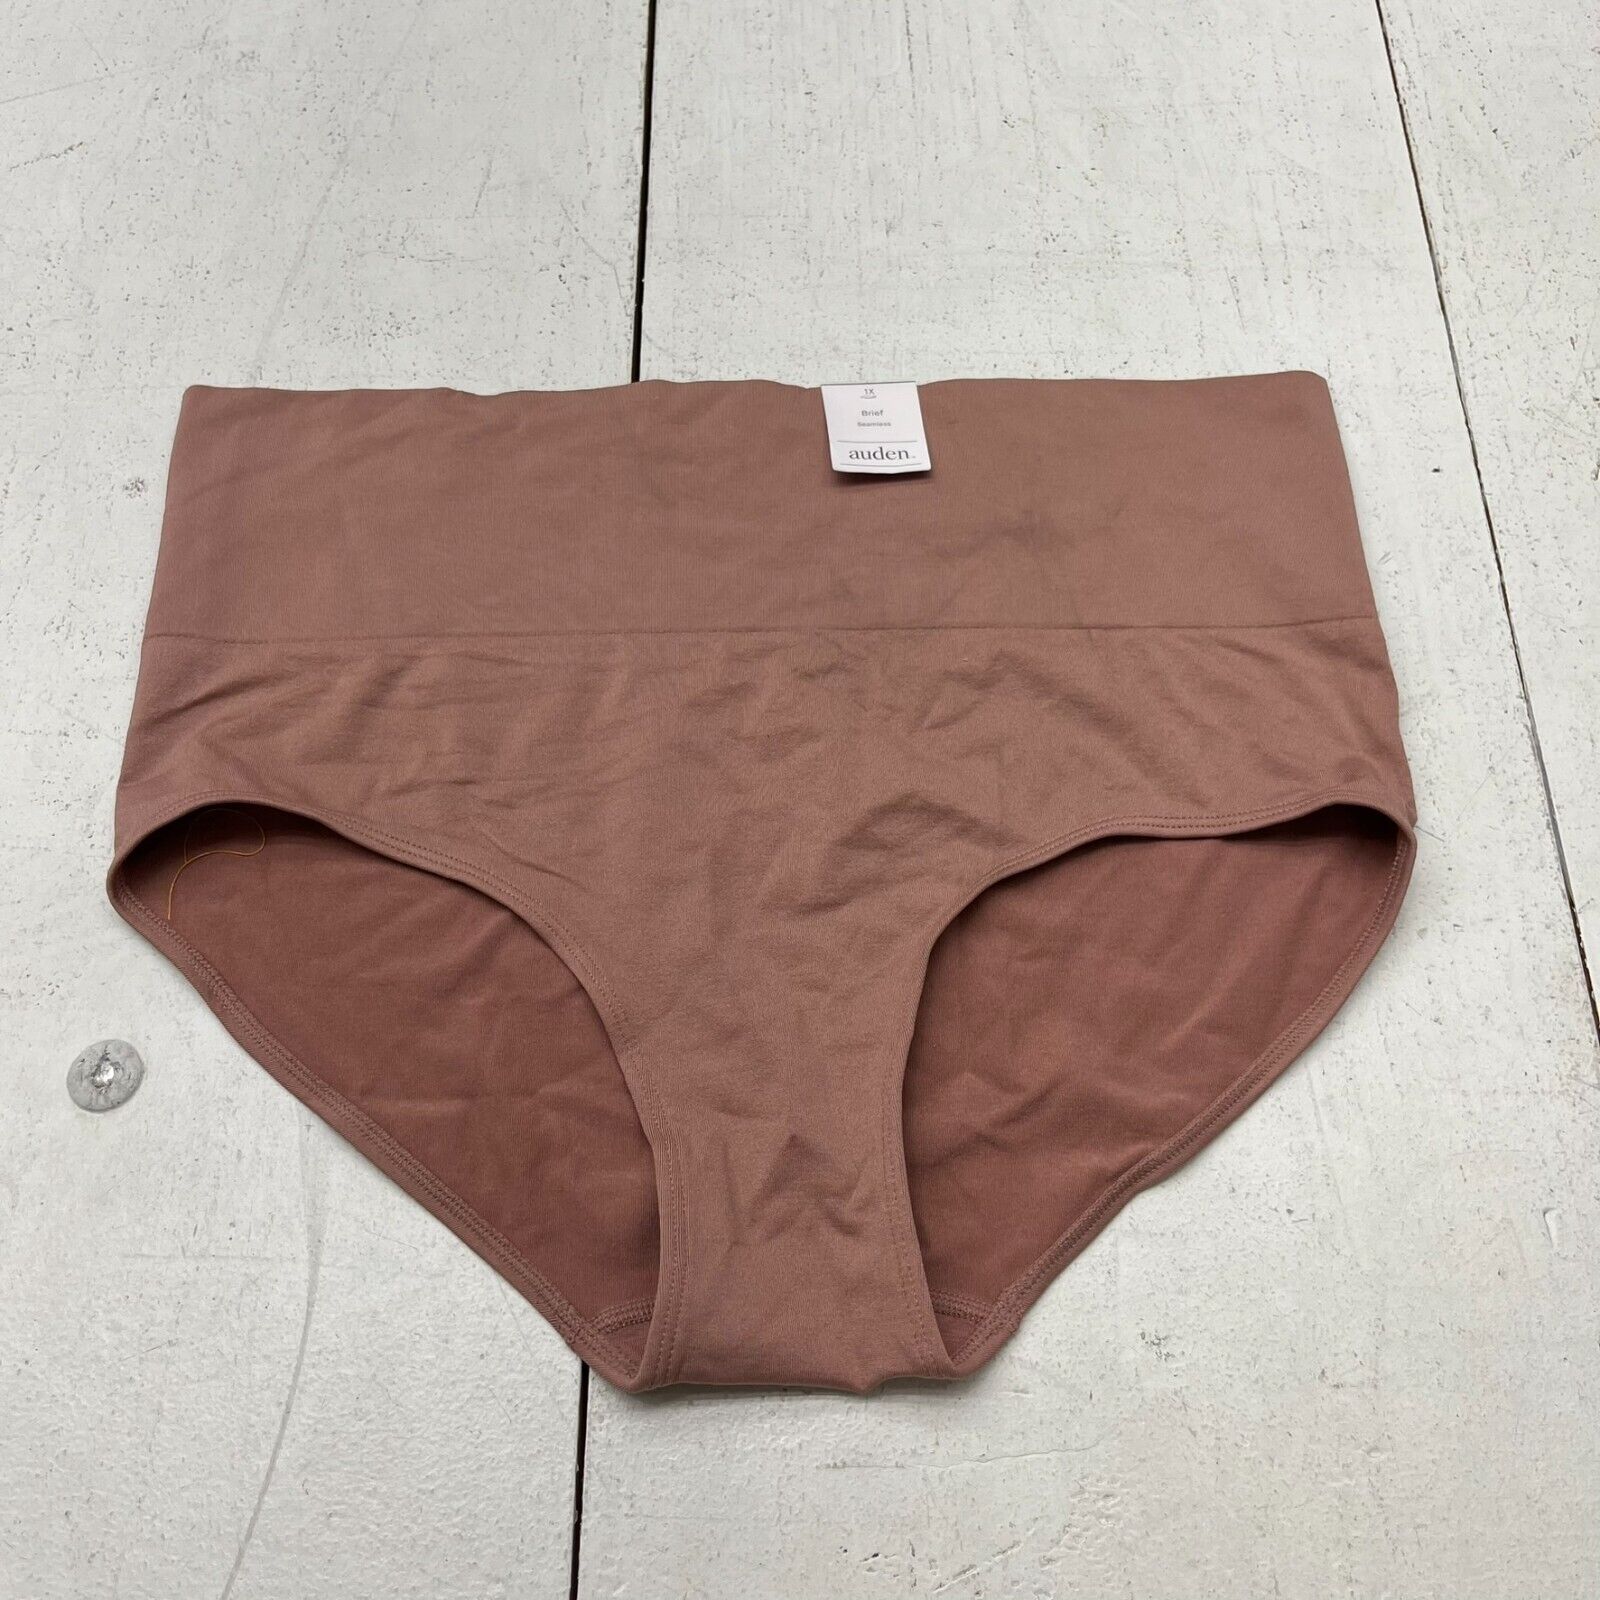 Auden Black Seamless Brief Underwear Women's Size 1X NEW - beyond